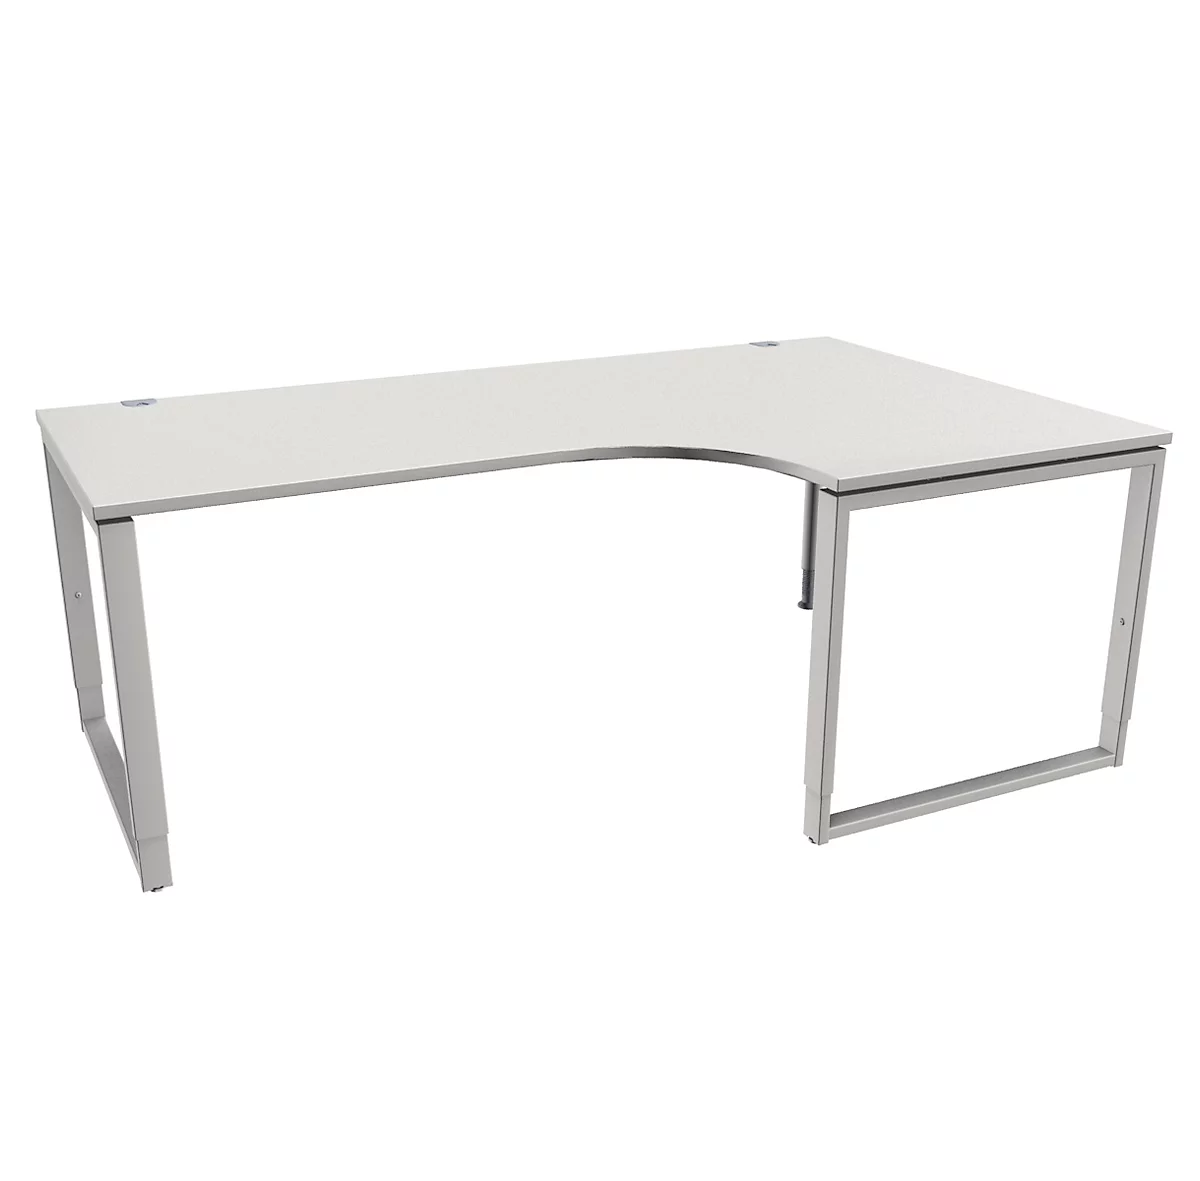 Schäfer Shop Genius MODENA FLEX escritorio angular, 90°, pie de soporte, fijación derecha, ancho 2000 mm, gris claro